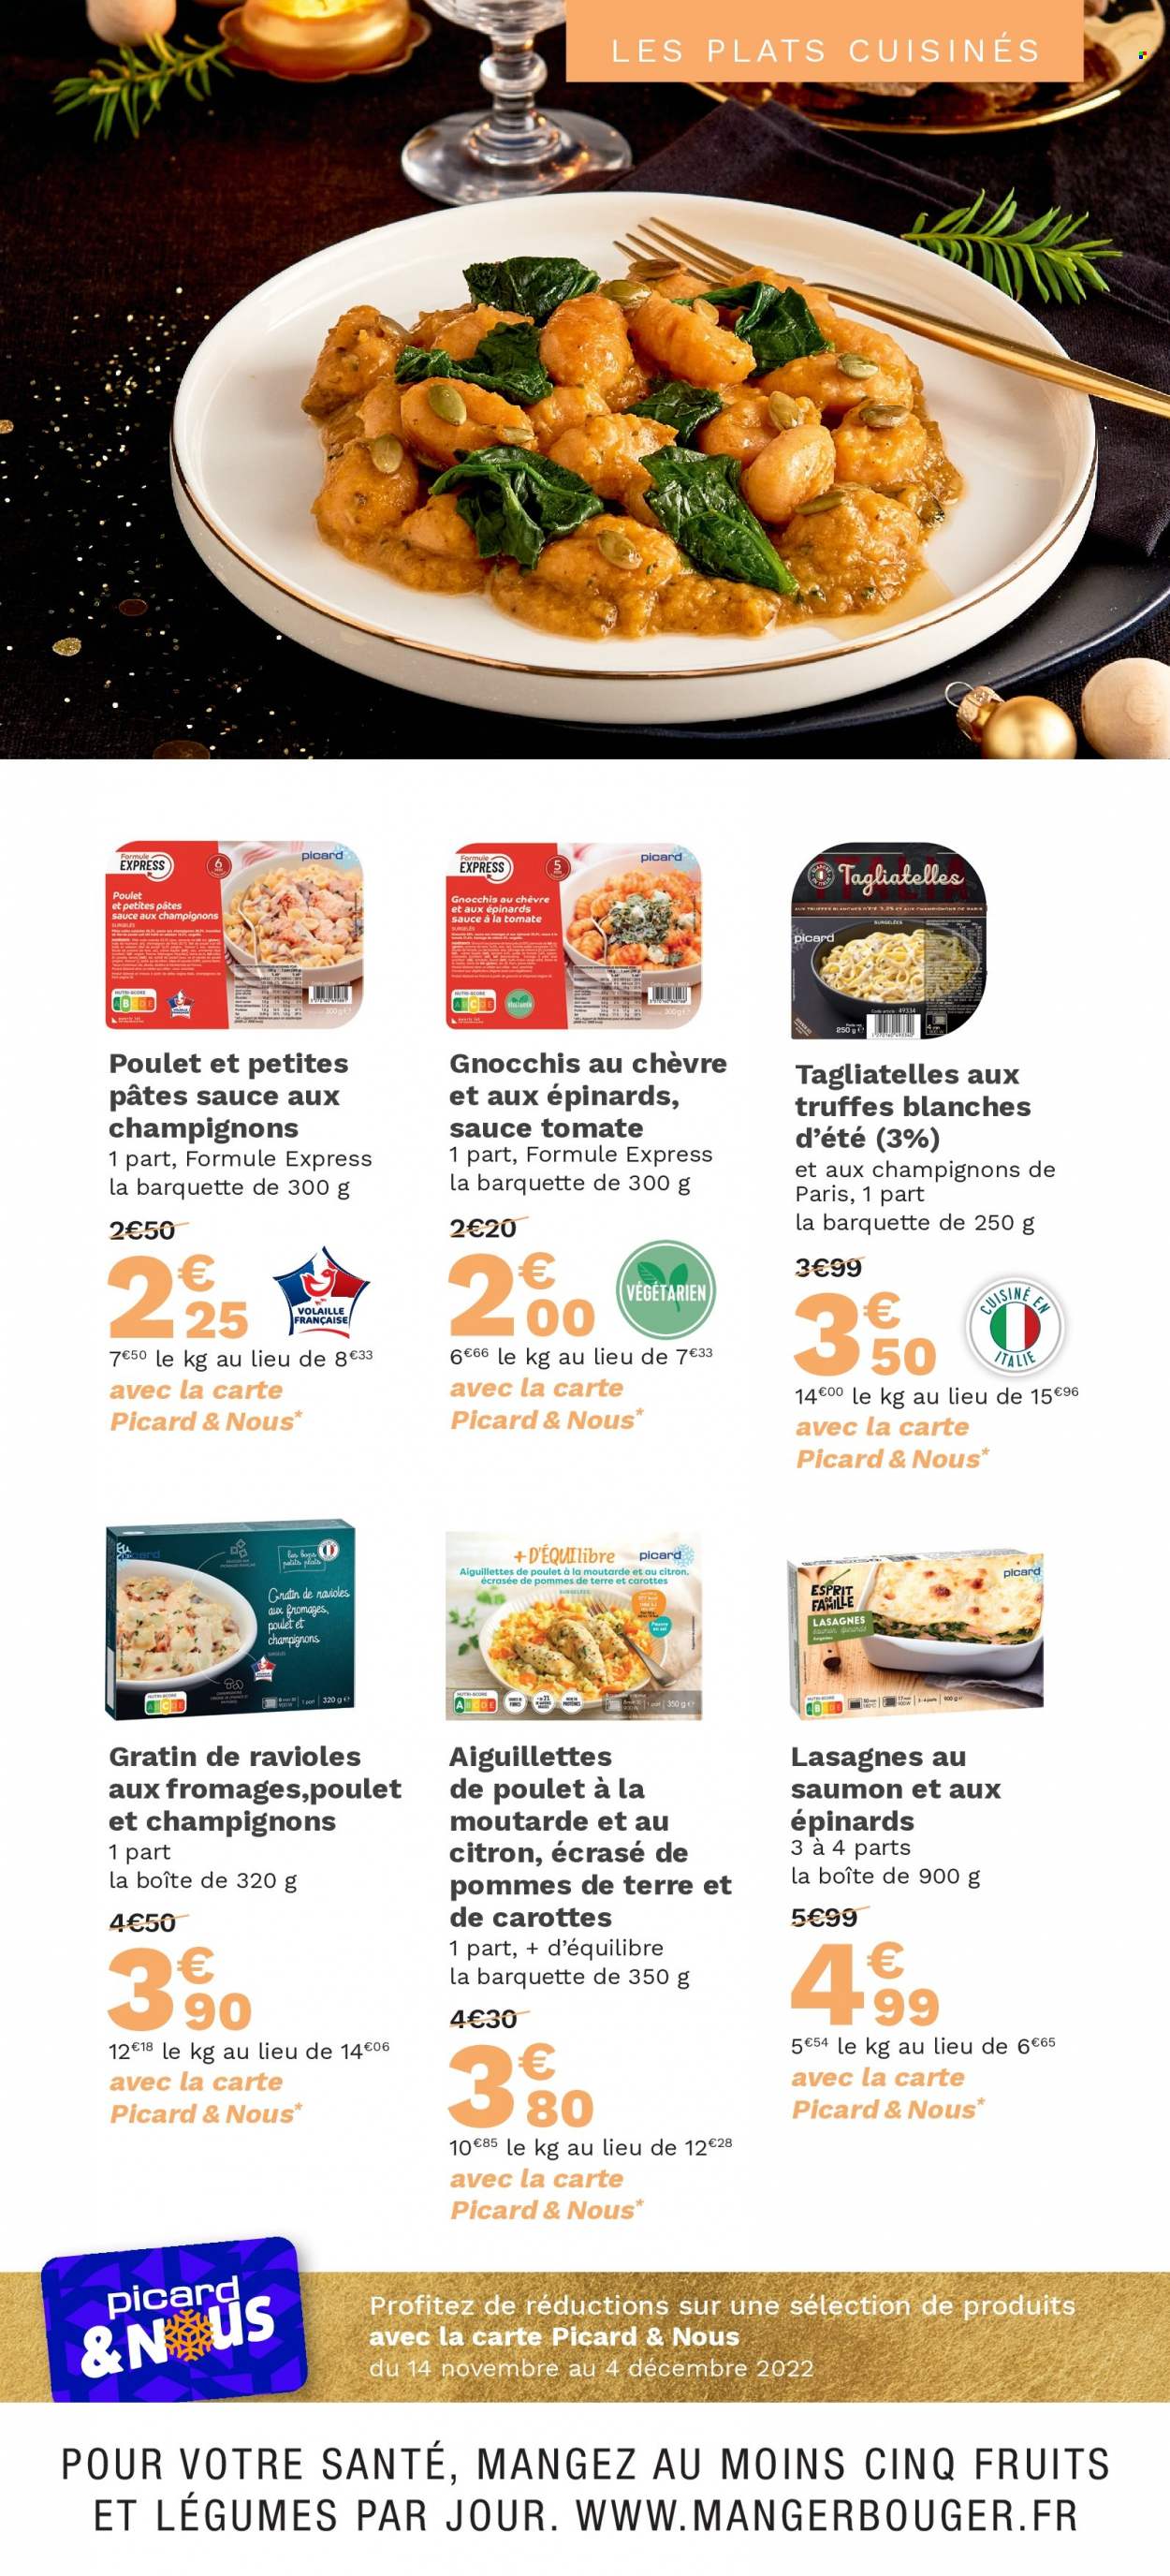 thumbnail - Catalogue Picard - 14/11/2022 - 04/12/2022 - Produits soldés - champignon de Paris, viande de poulet, escalope de poulet, gnocchi, lasagnes, ravioli, ecrasé de pommes, truffes, sauce tomate, pâtes, tagliatelles. Page 13.